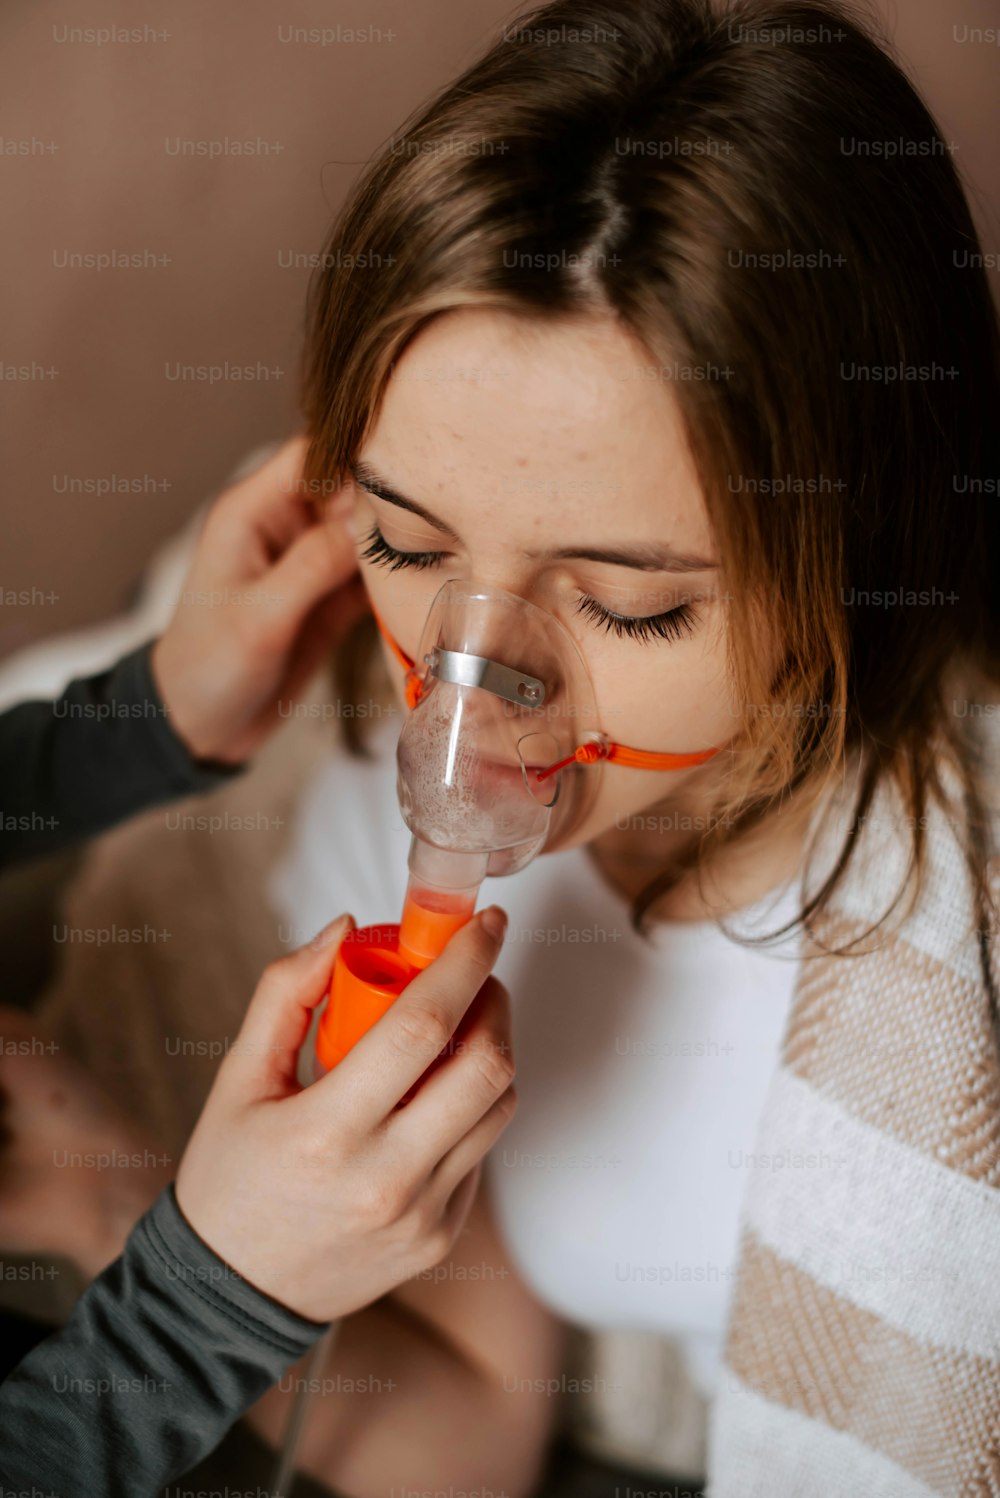 Eine Frau, die einen orangefarbenen Gegenstand im Mund hält